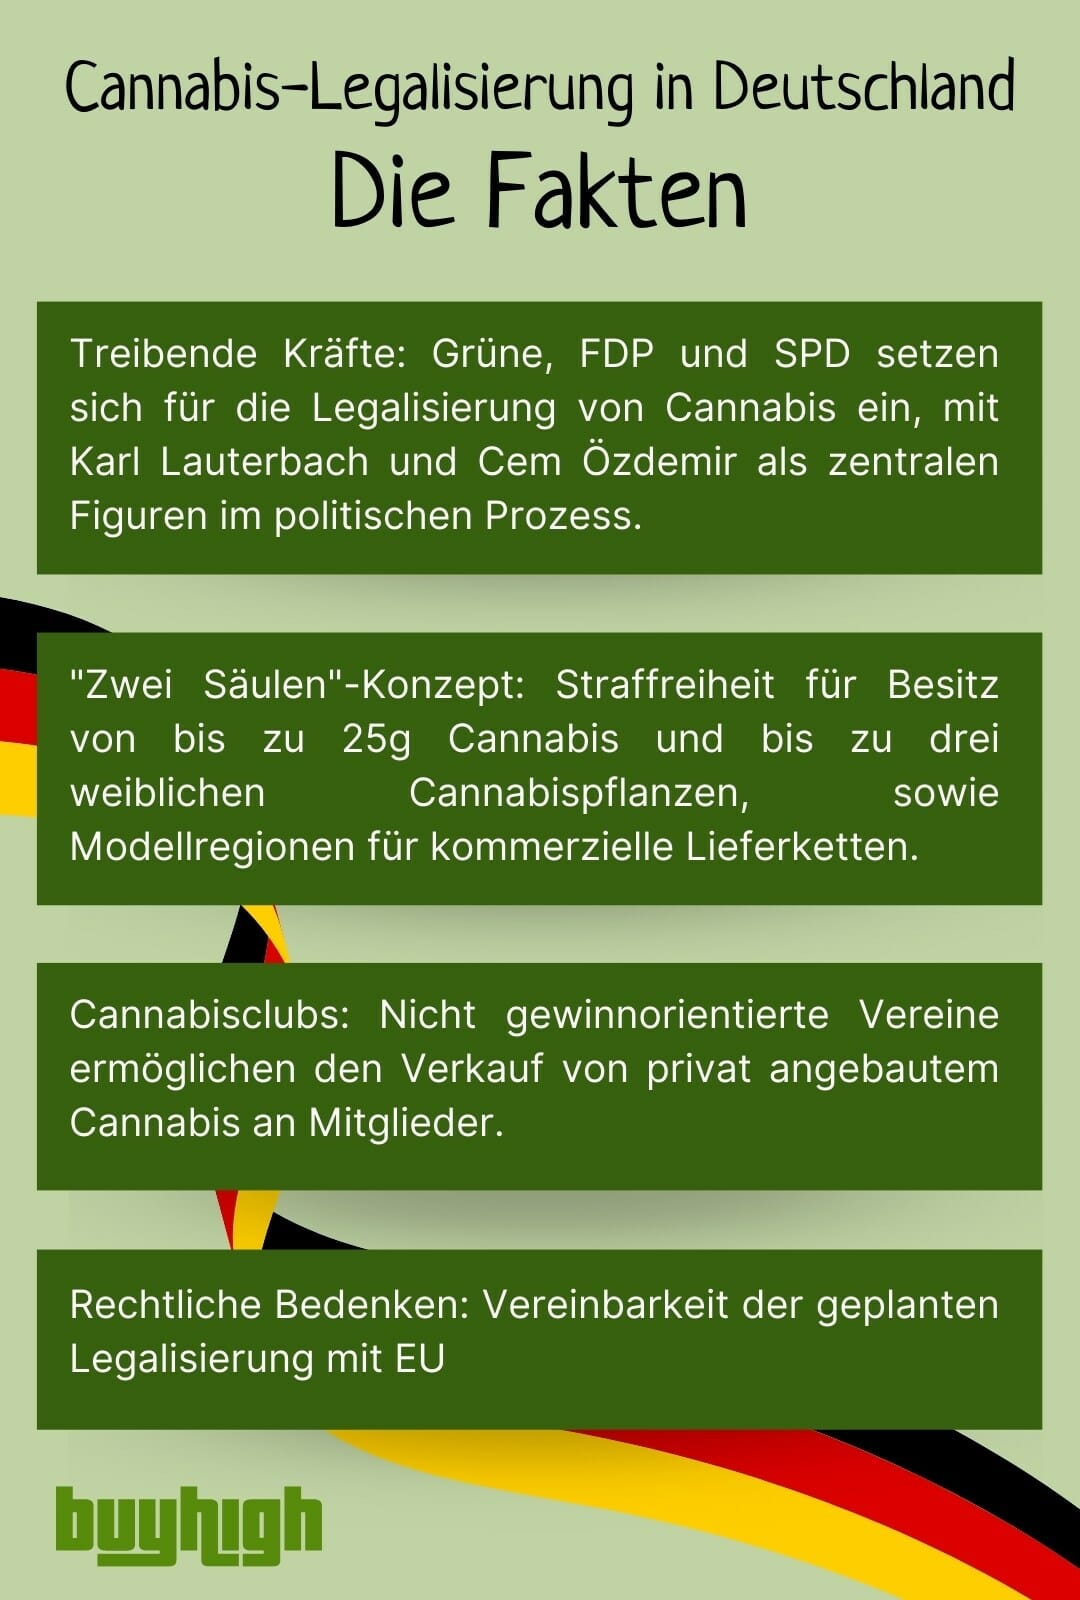 Deutschlands Weg zur Cannabis-Legalisierung: Ein Überblick über Fakten und Pläne